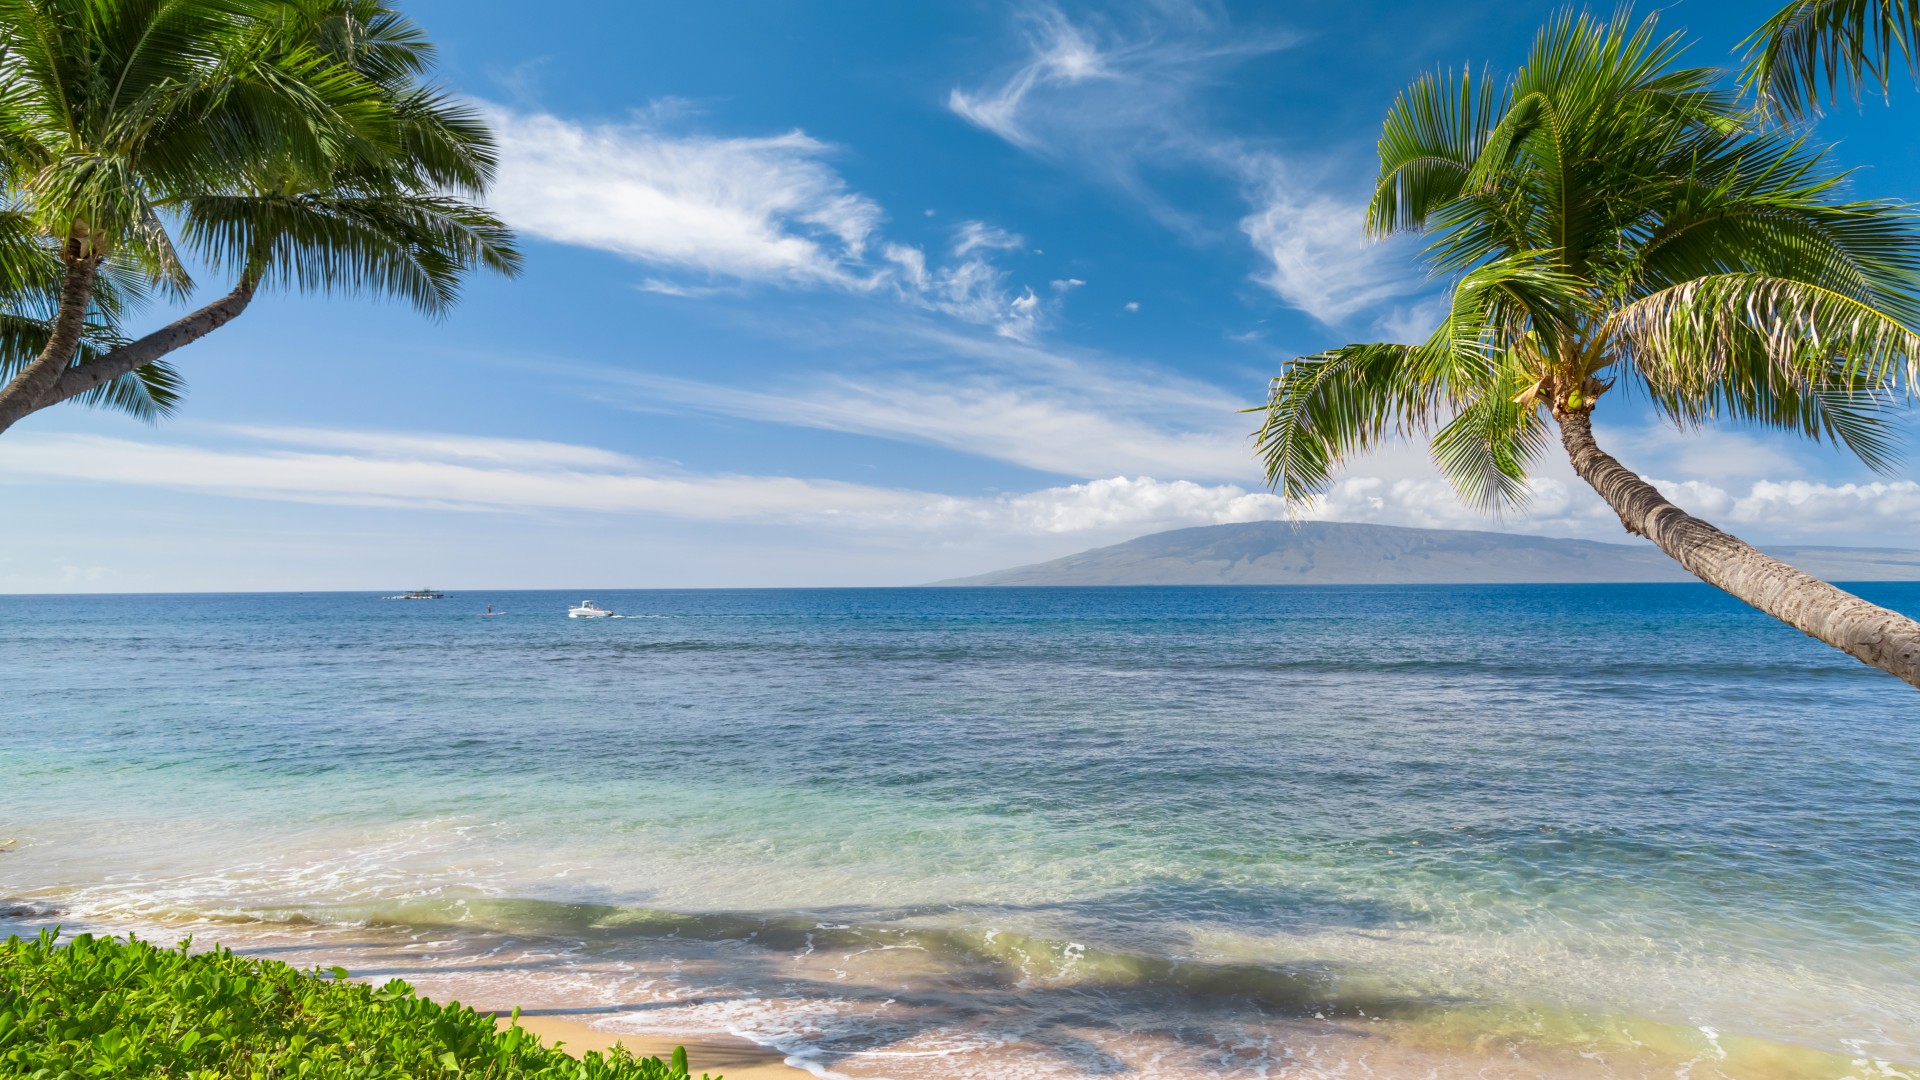 夏威夷 热带海岸风景桌面壁纸 风景壁纸 壁纸下载 彼岸桌面